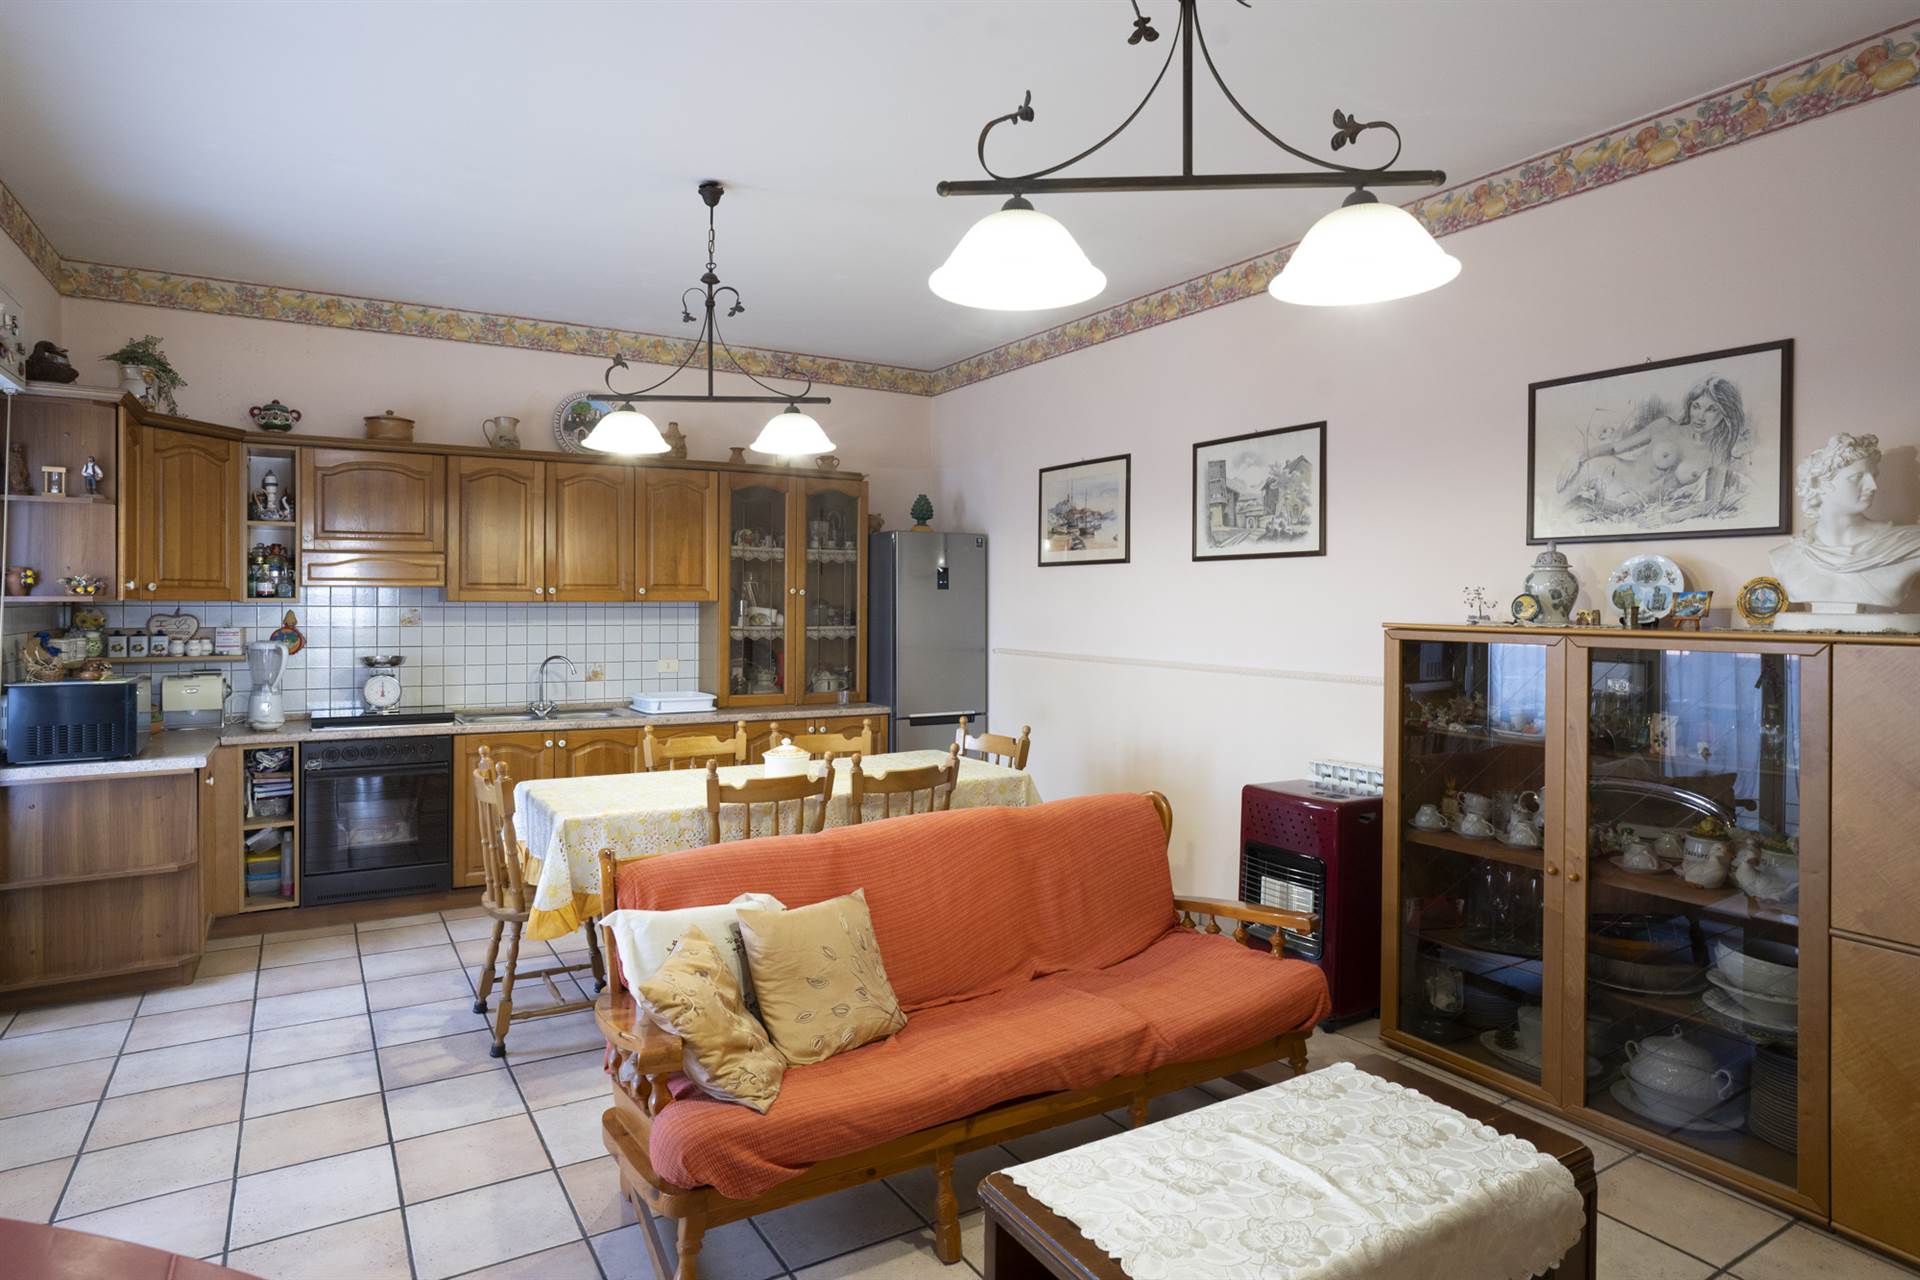 Splendido appartamento in vendita a Camporotondo Etneo, situato in Via Antonio Corsaro al piano 3°. L'immobile si estende su 117 mq ed è composto da 3 vani, 2 bagni, 3 camere da letto, cucina 